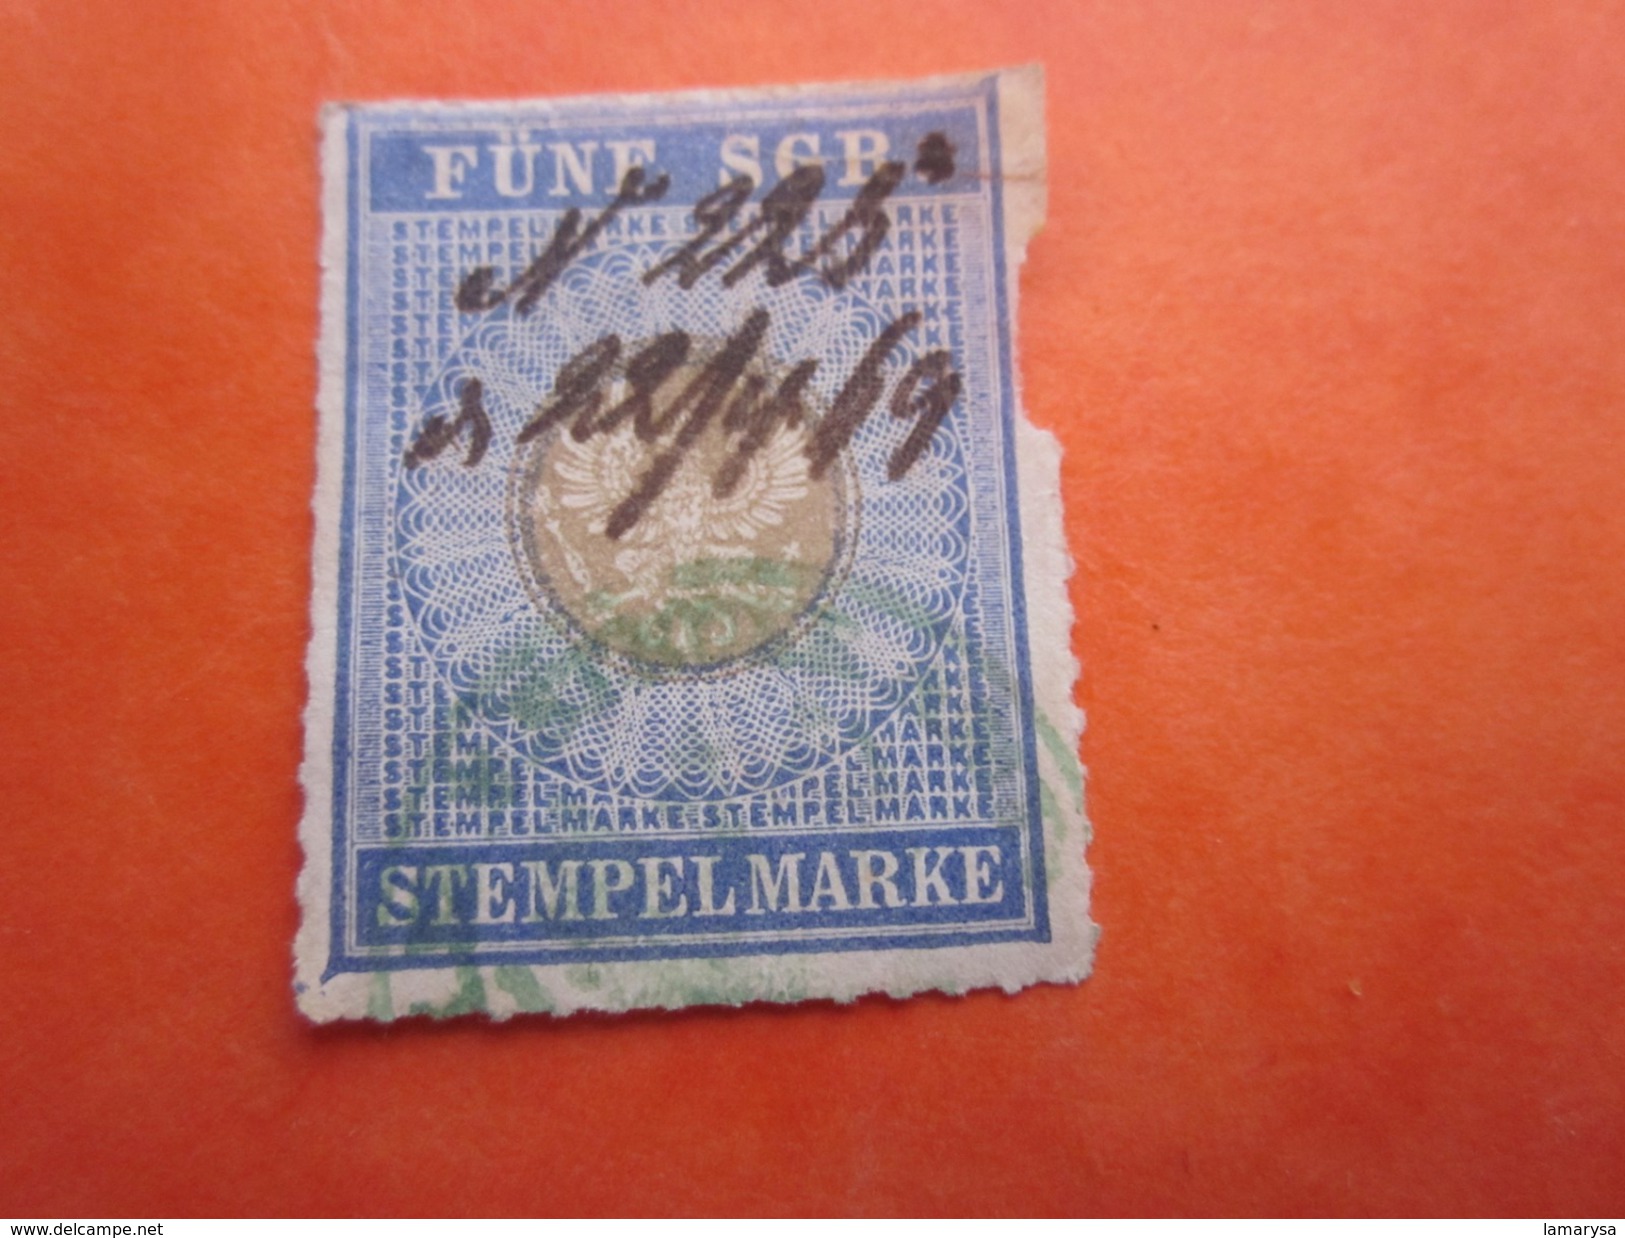 22-4-1869 Österreichische Stempelmarke FUNE SGP STEMPEL MARKE   STAMP BRIEF TIMBRE - ...-1850 Préphilatélie